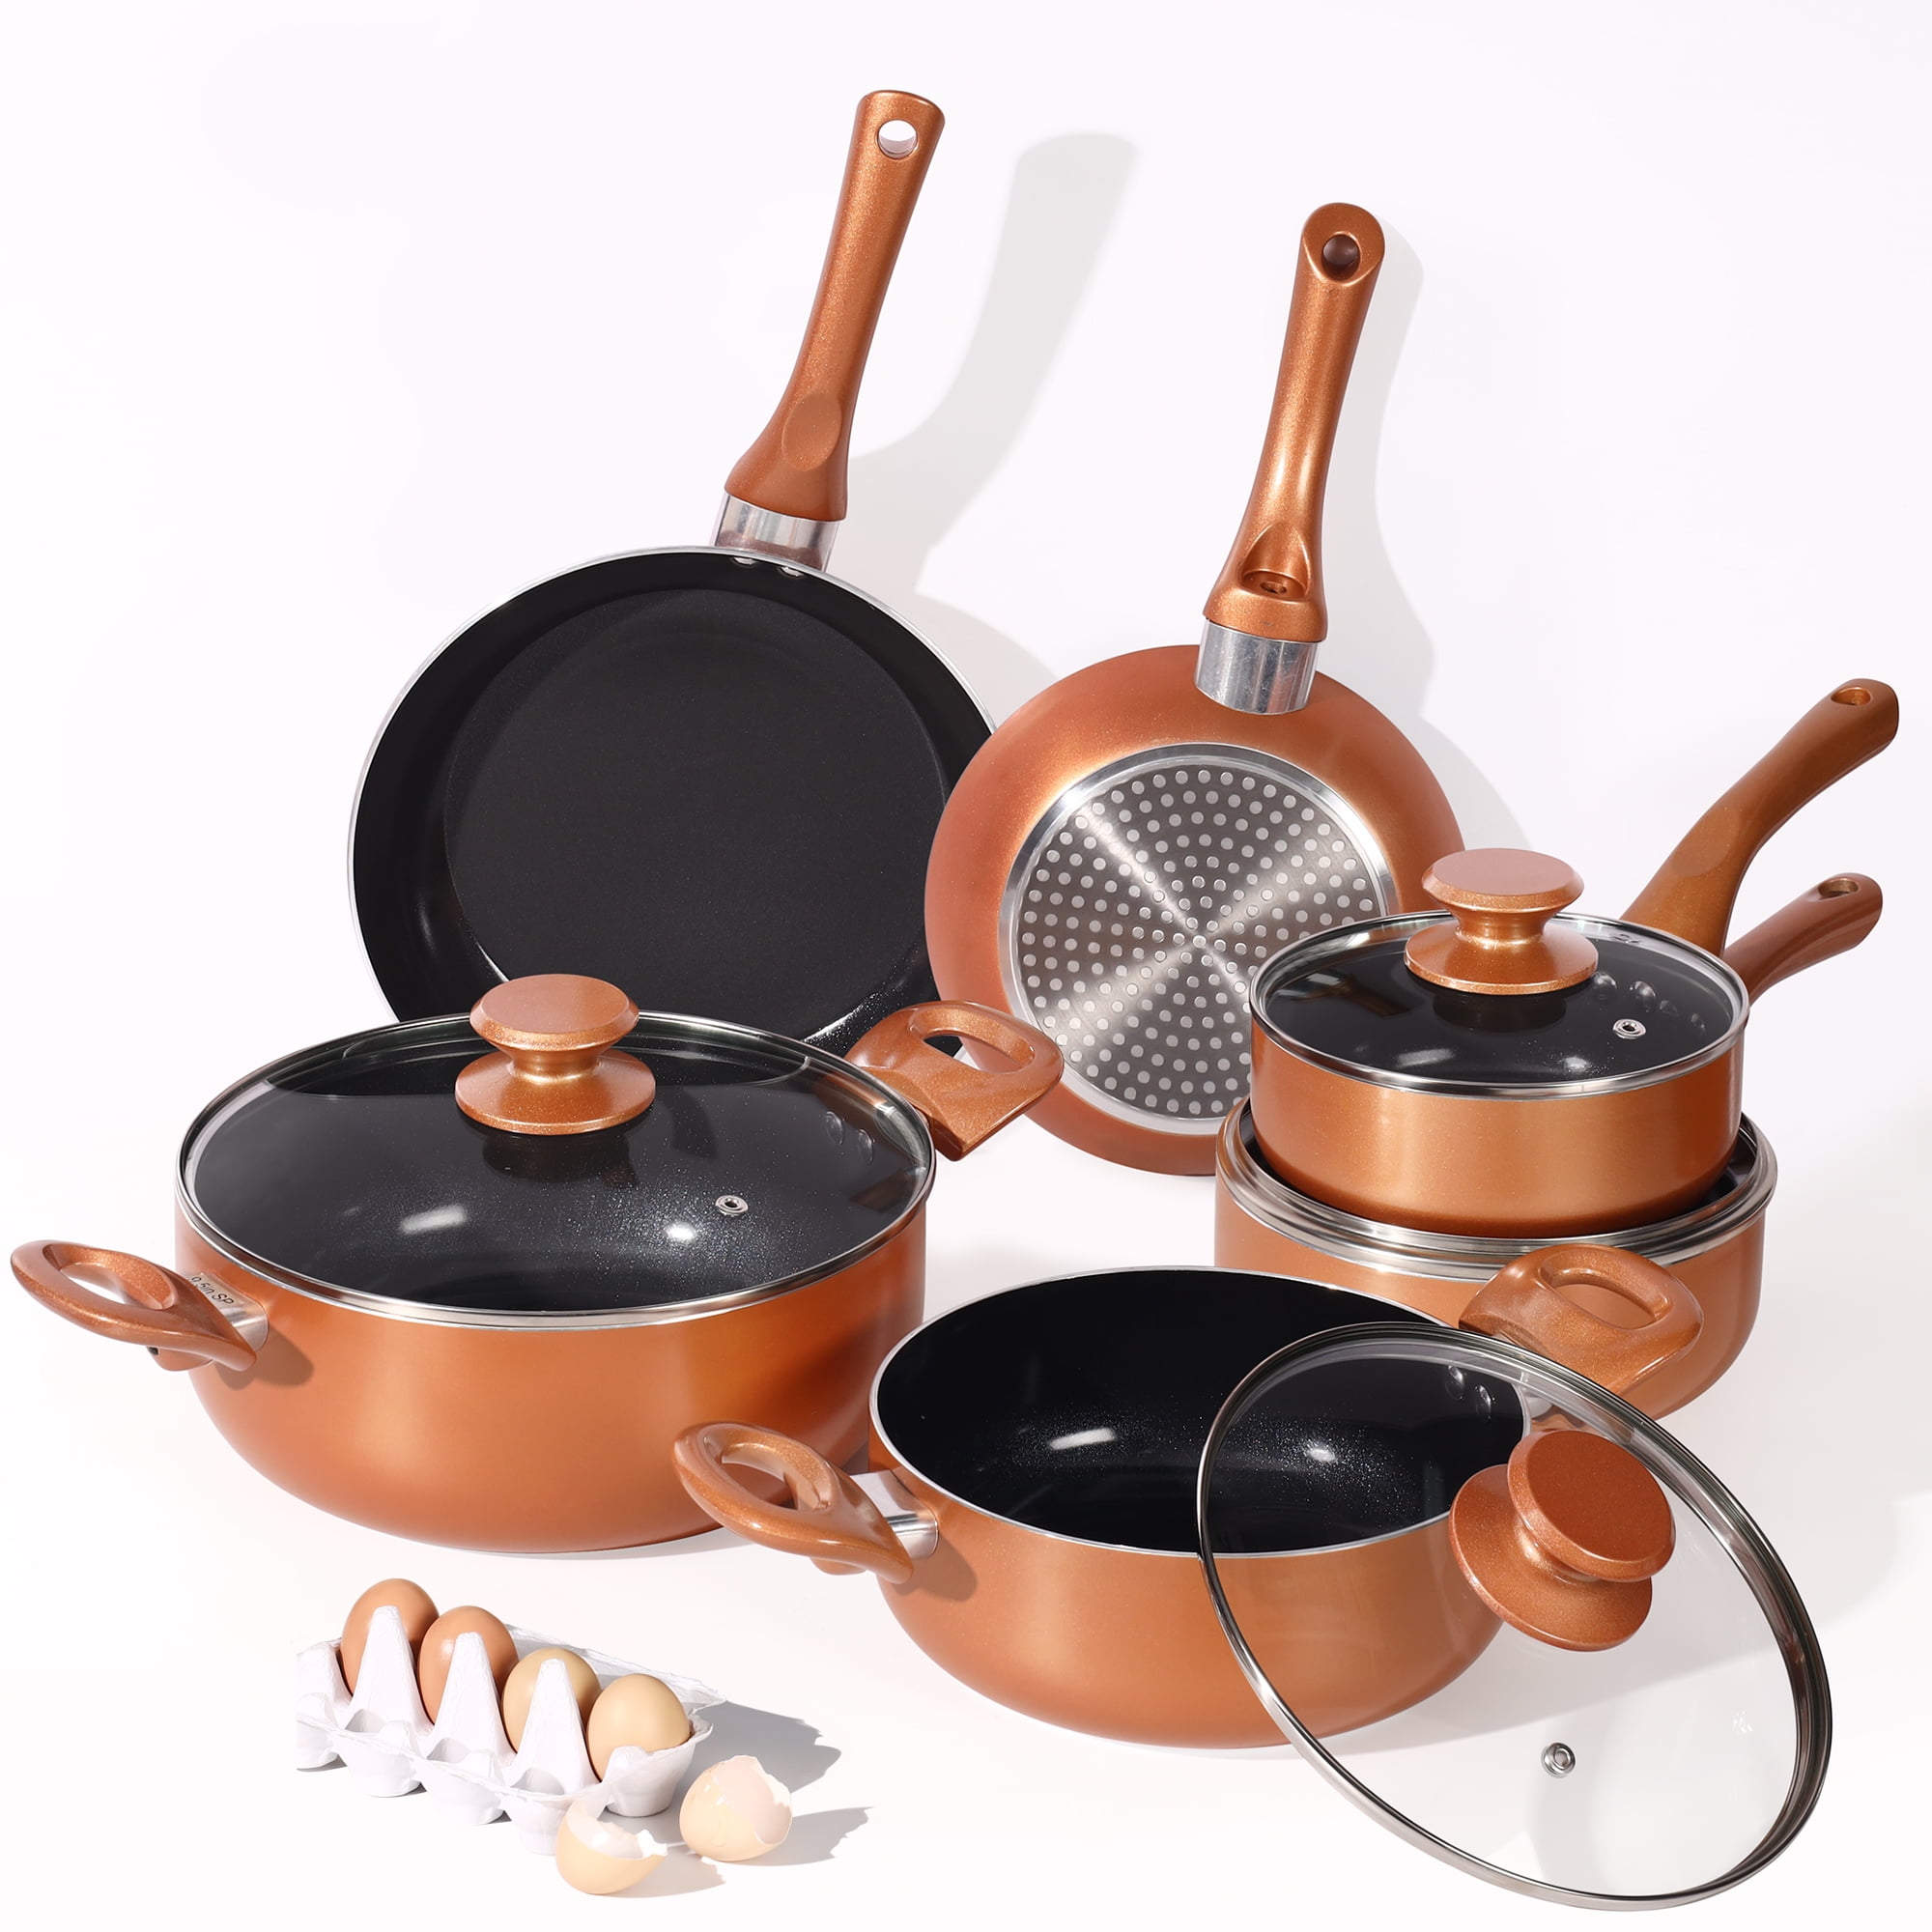 Fruiteam 6pcs Cookware Set Ceramic Nonstick Soup Pot/Sauce Pan/Frying Pans Set, Copper Aluminum Pan with Lid, Induction GAS Compatible, Black